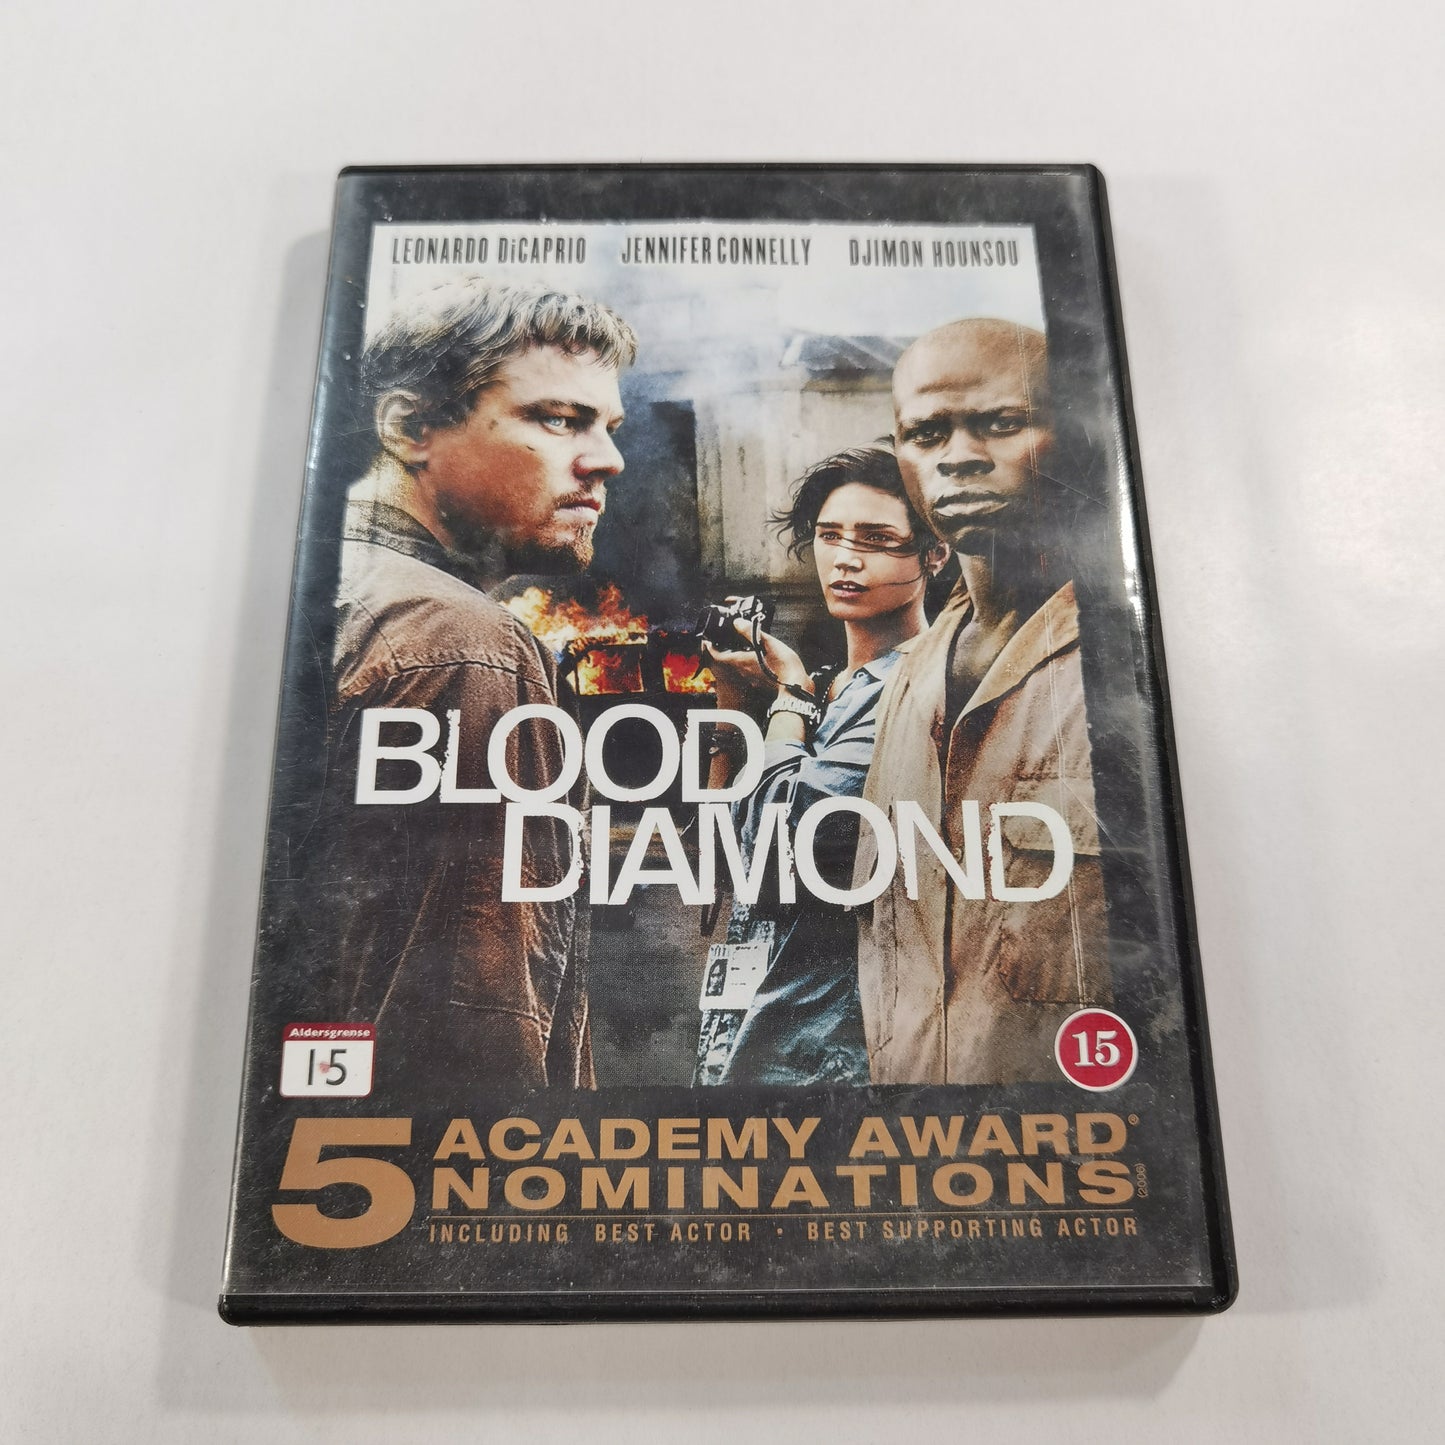 Blood Diamond (2006) - DVD SE NO DK FI 2011